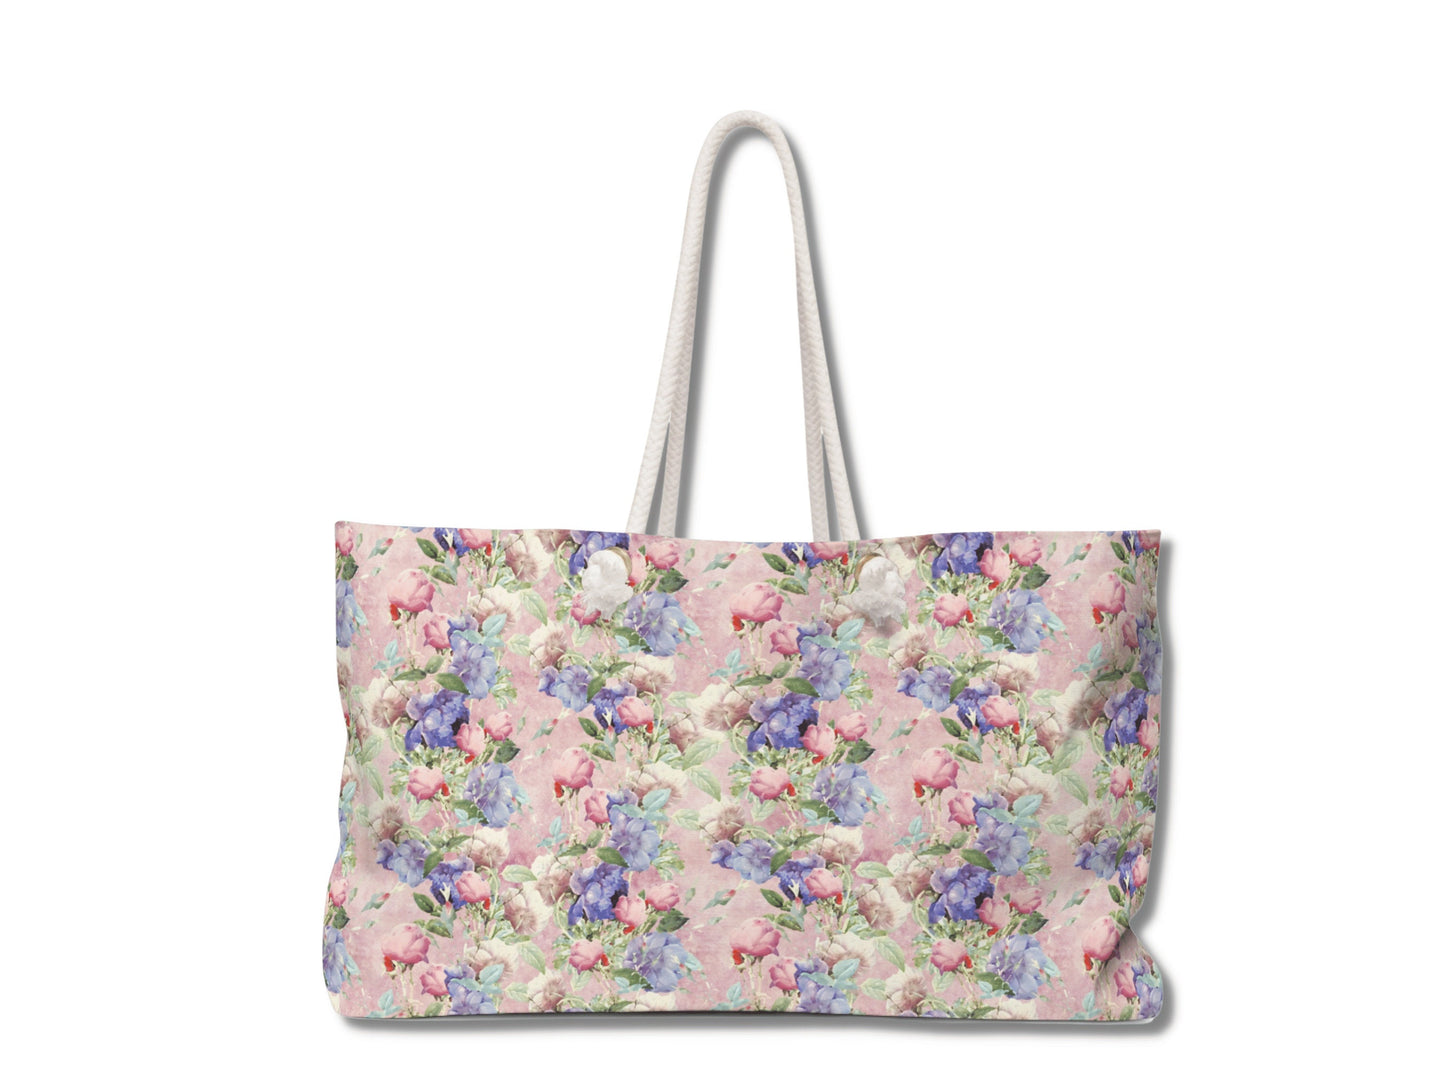 Flower Tote Bag, Floral Weekend Tote Bag with Rope Handles, Womens Weekender Bag